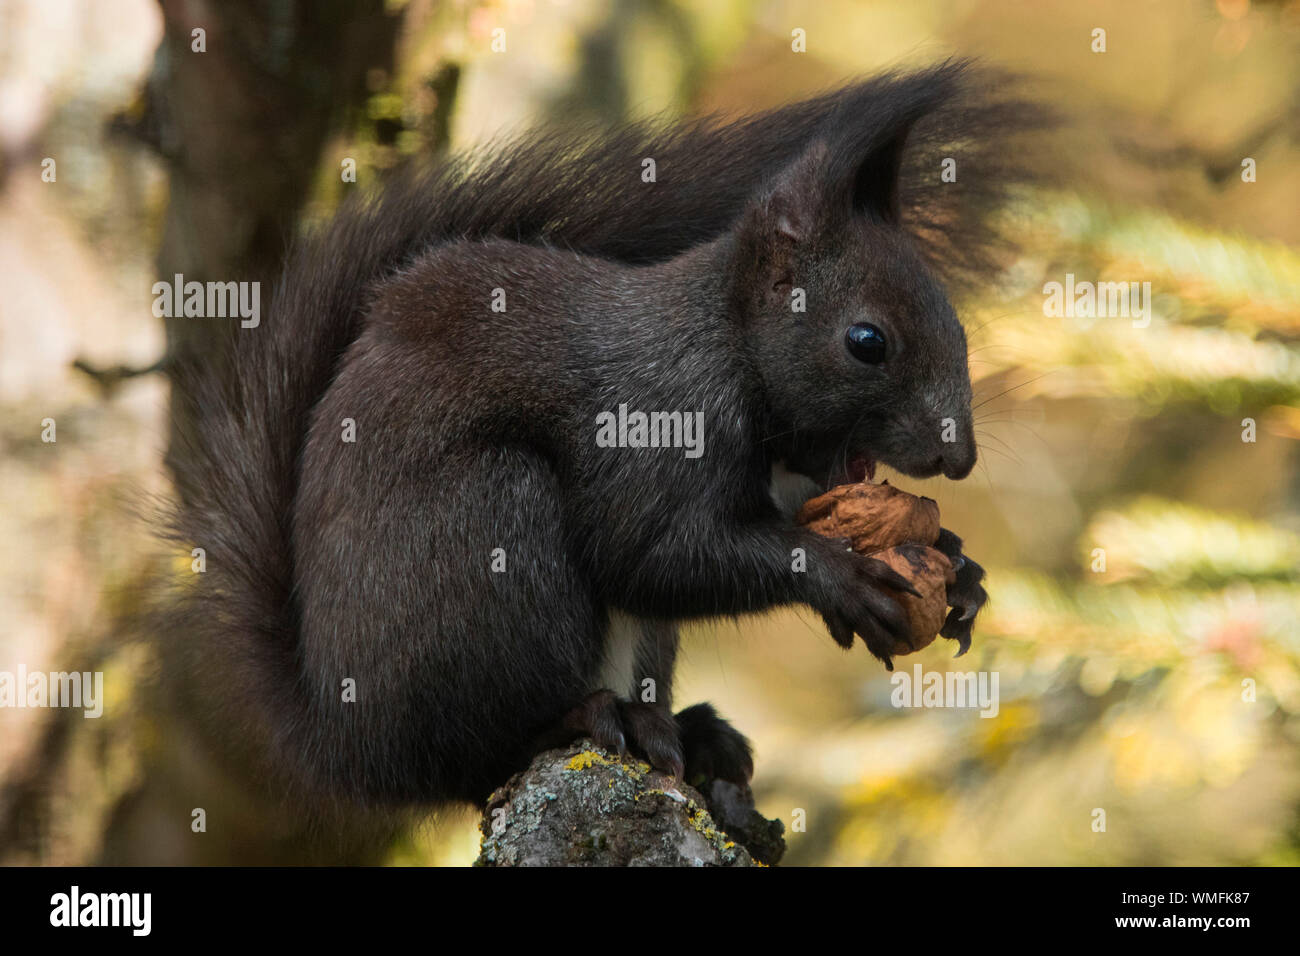 eurasian red squirrel, (Sciurus vulgaris) Stock Photo